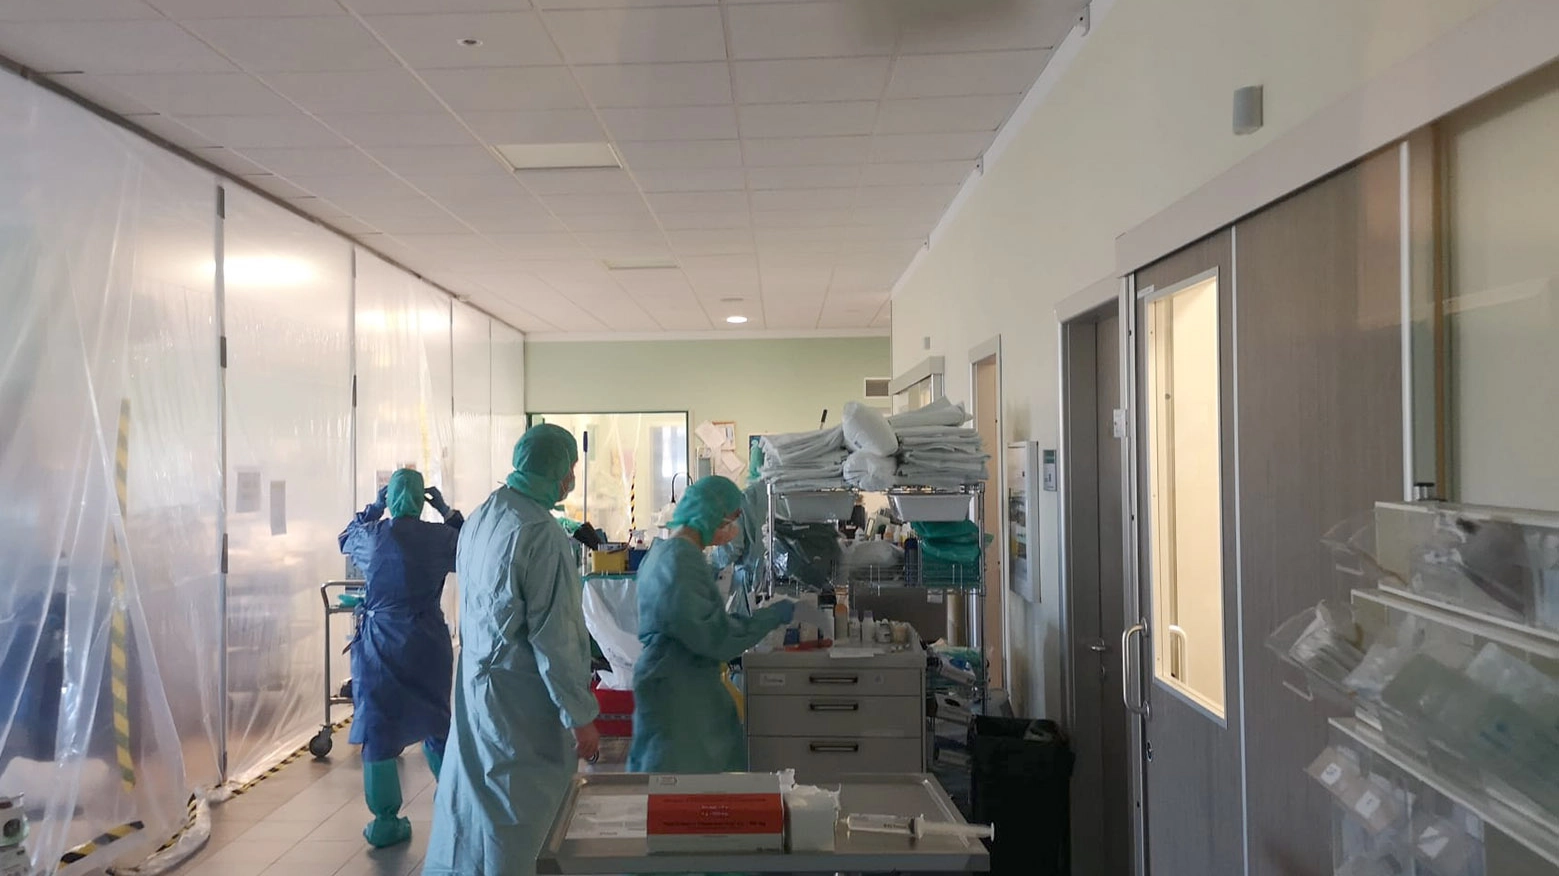 L'ospedale di Imola impegnato nell'emergenza coronavirus (Foto Isolapress)